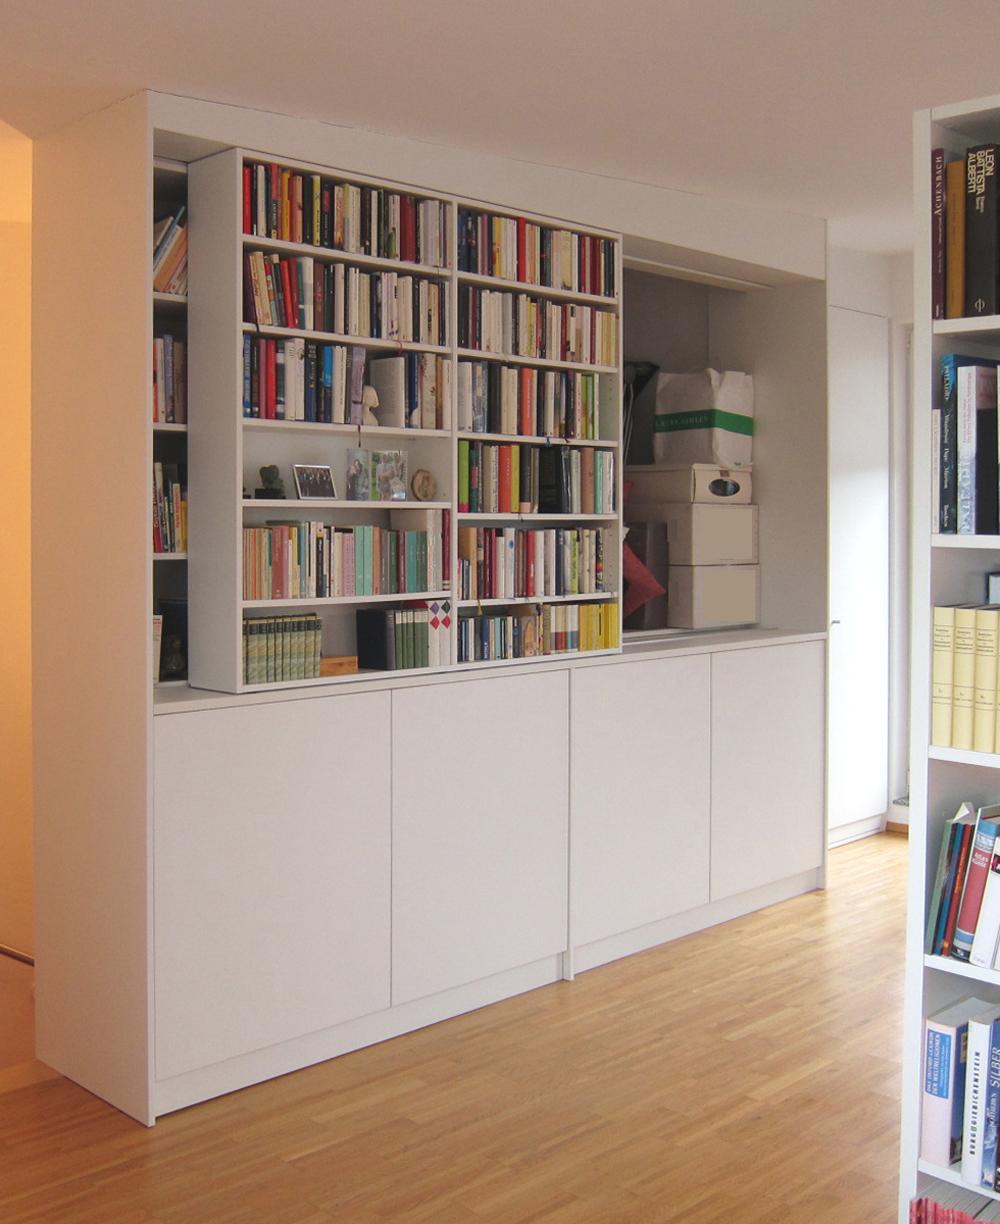 Bücherregal mit Stauraum über Treppe - geöffnet #bücherregal #stauraum #schrankwand #aktenschrank ©Birgit Hansen